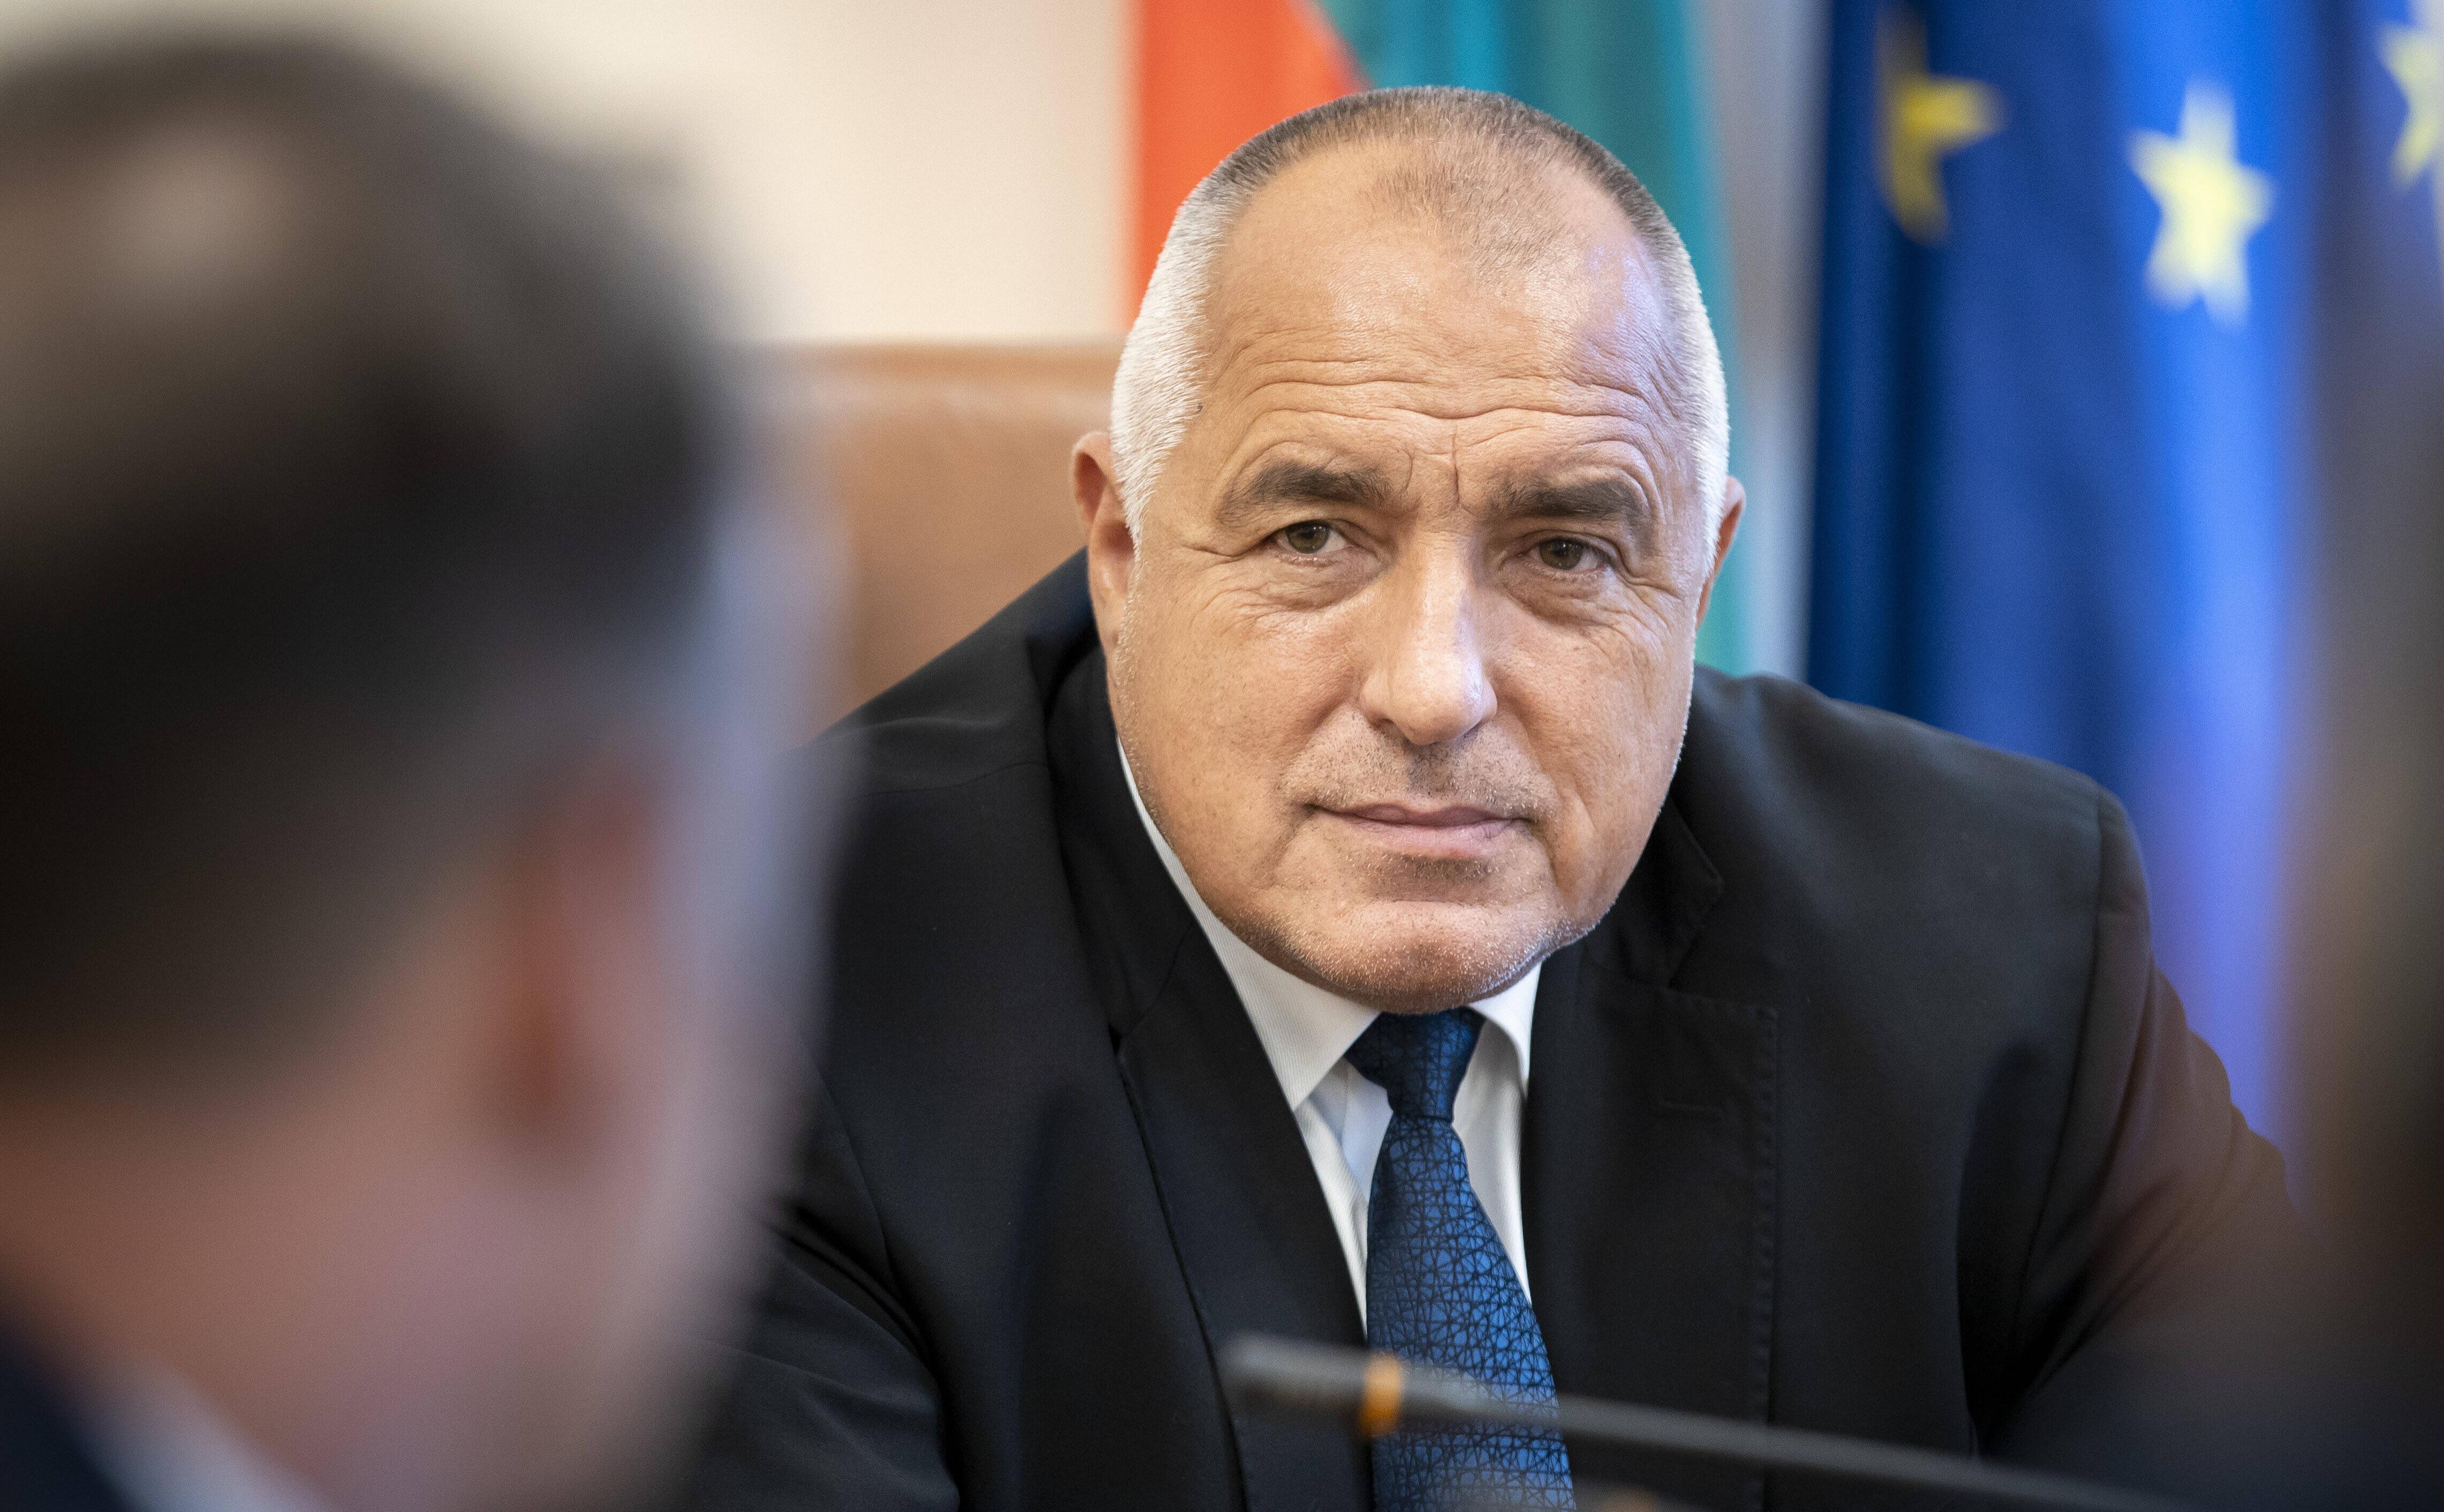 ЦИК сообщила о лидерстве коалиции экс-премьера на выборах в Болгарии"/>













